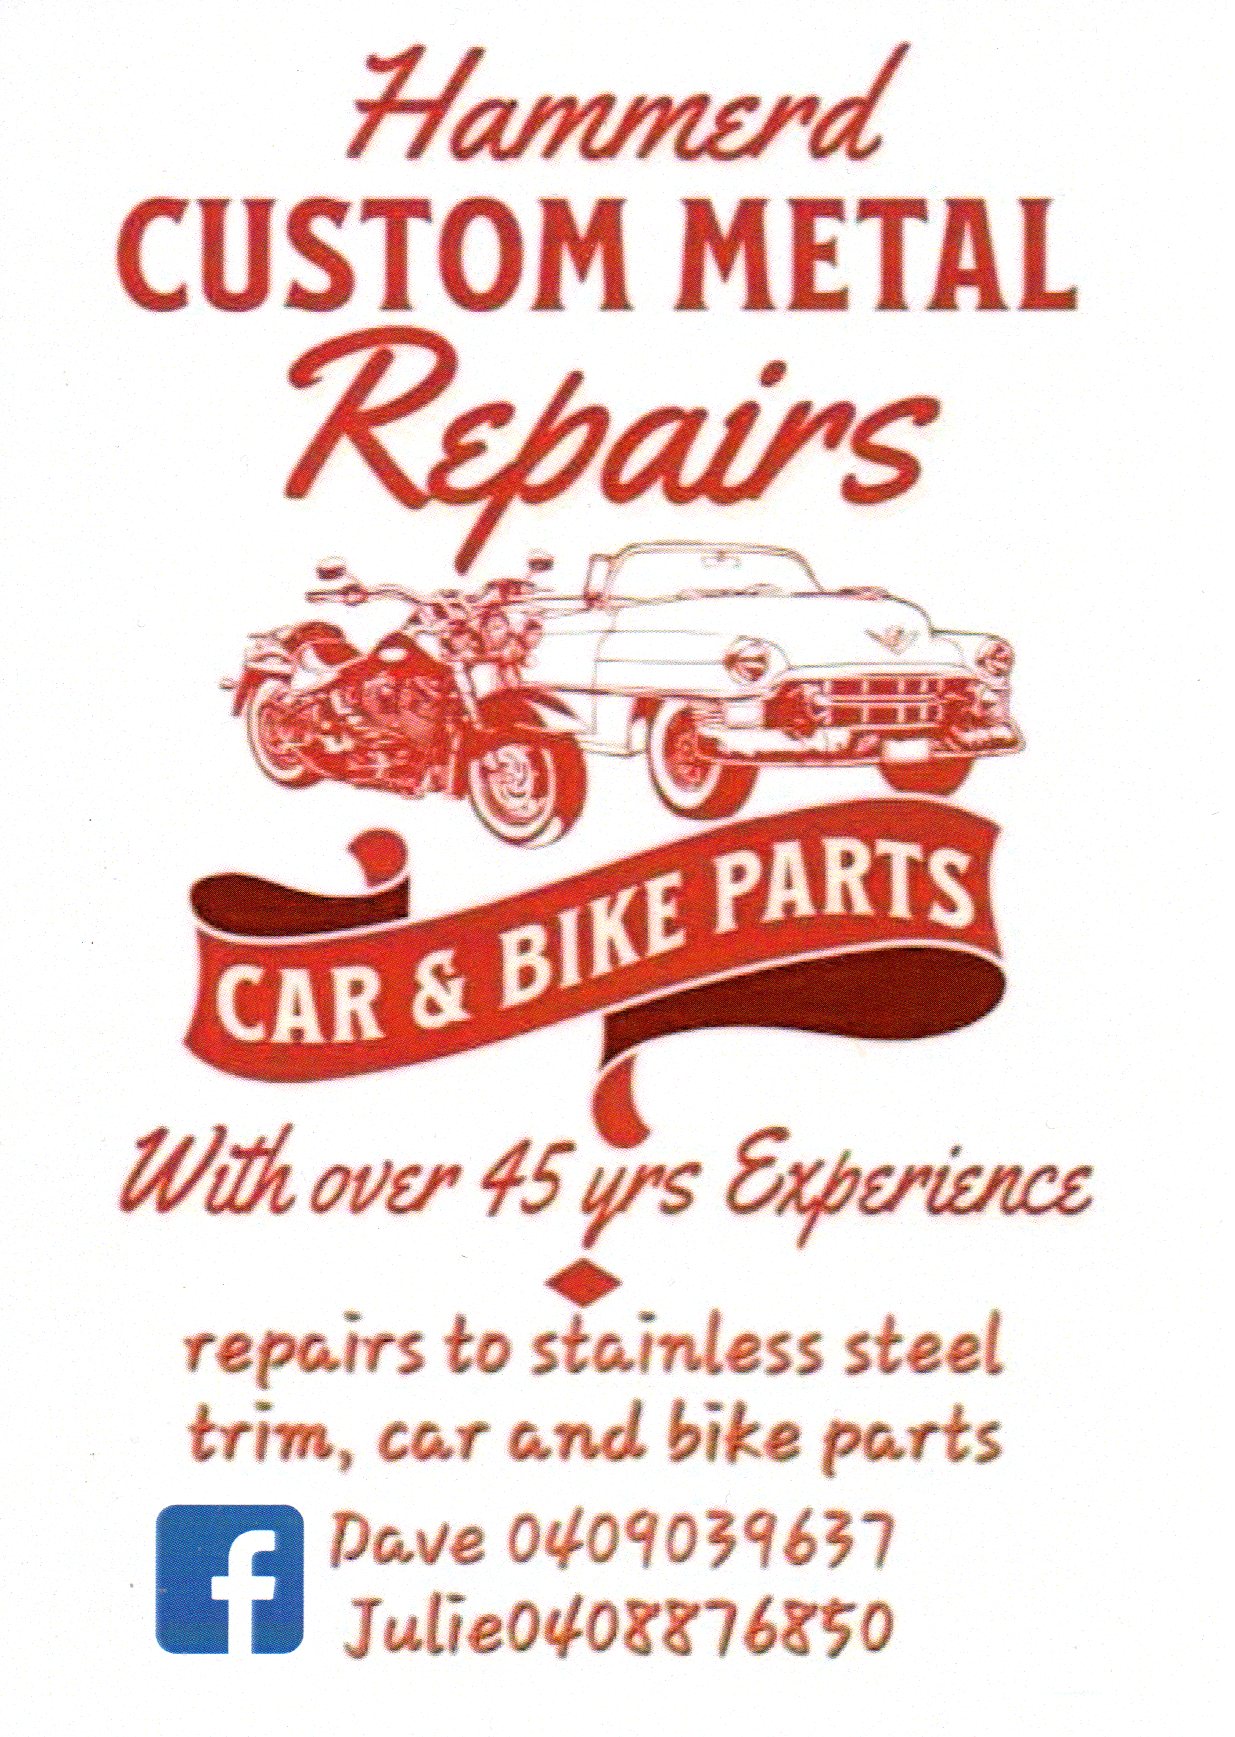 Hammerd Custom Metal repairs